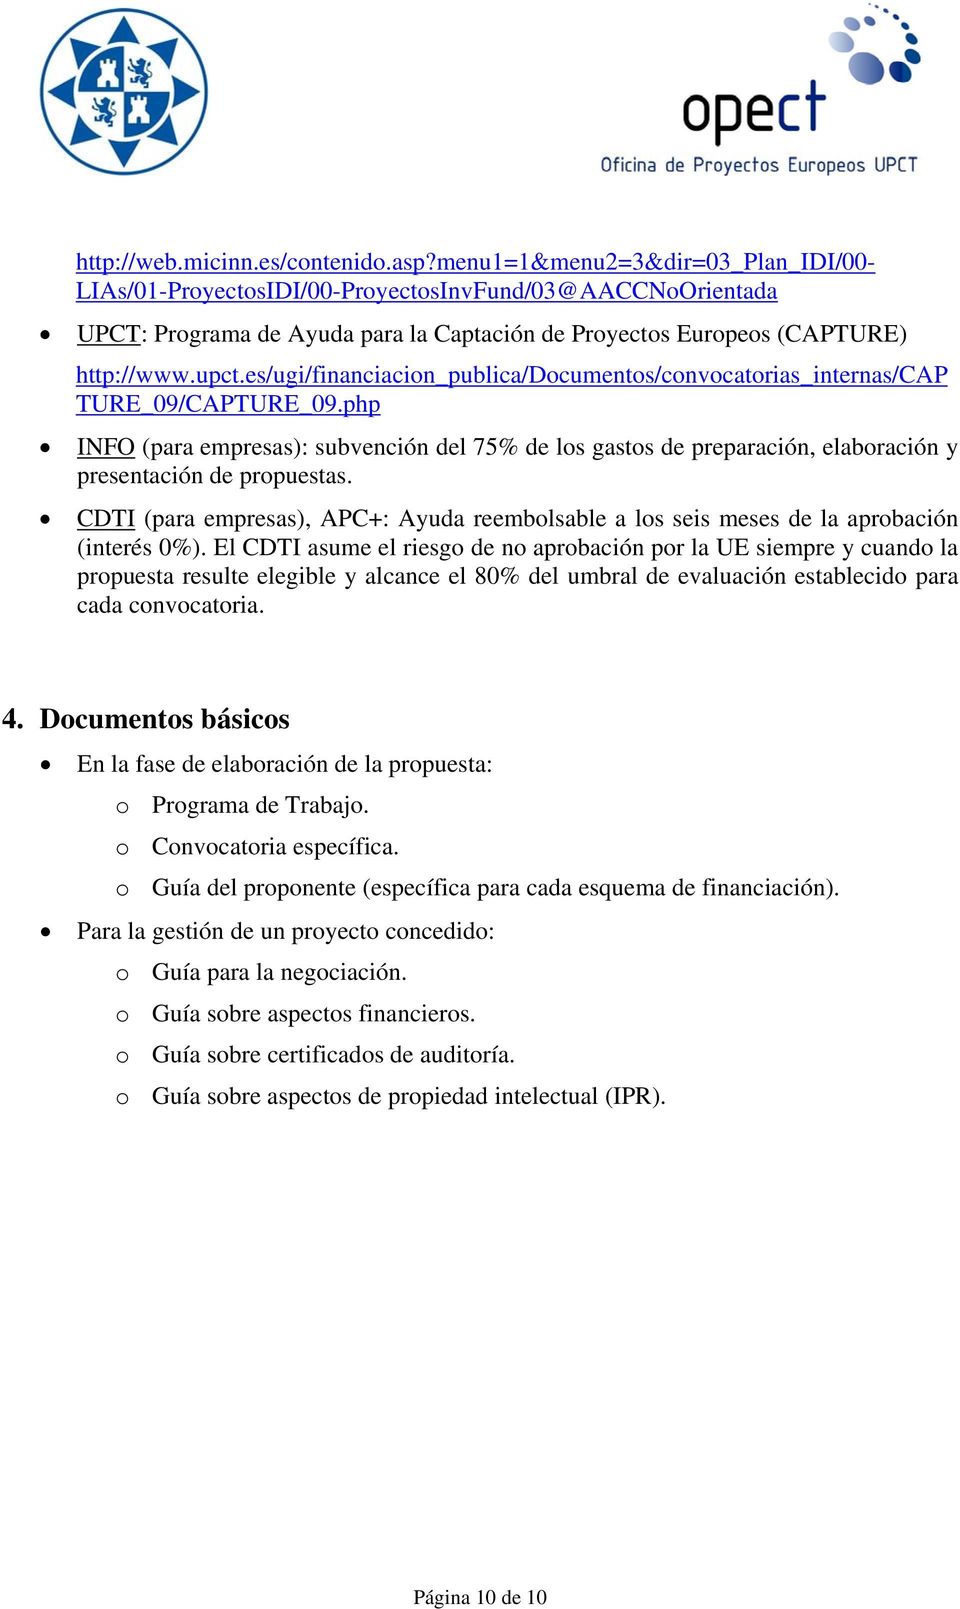 es/ugi/financiacion_publica/documentos/convocatorias_internas/cap TURE_09/CAPTURE_09.